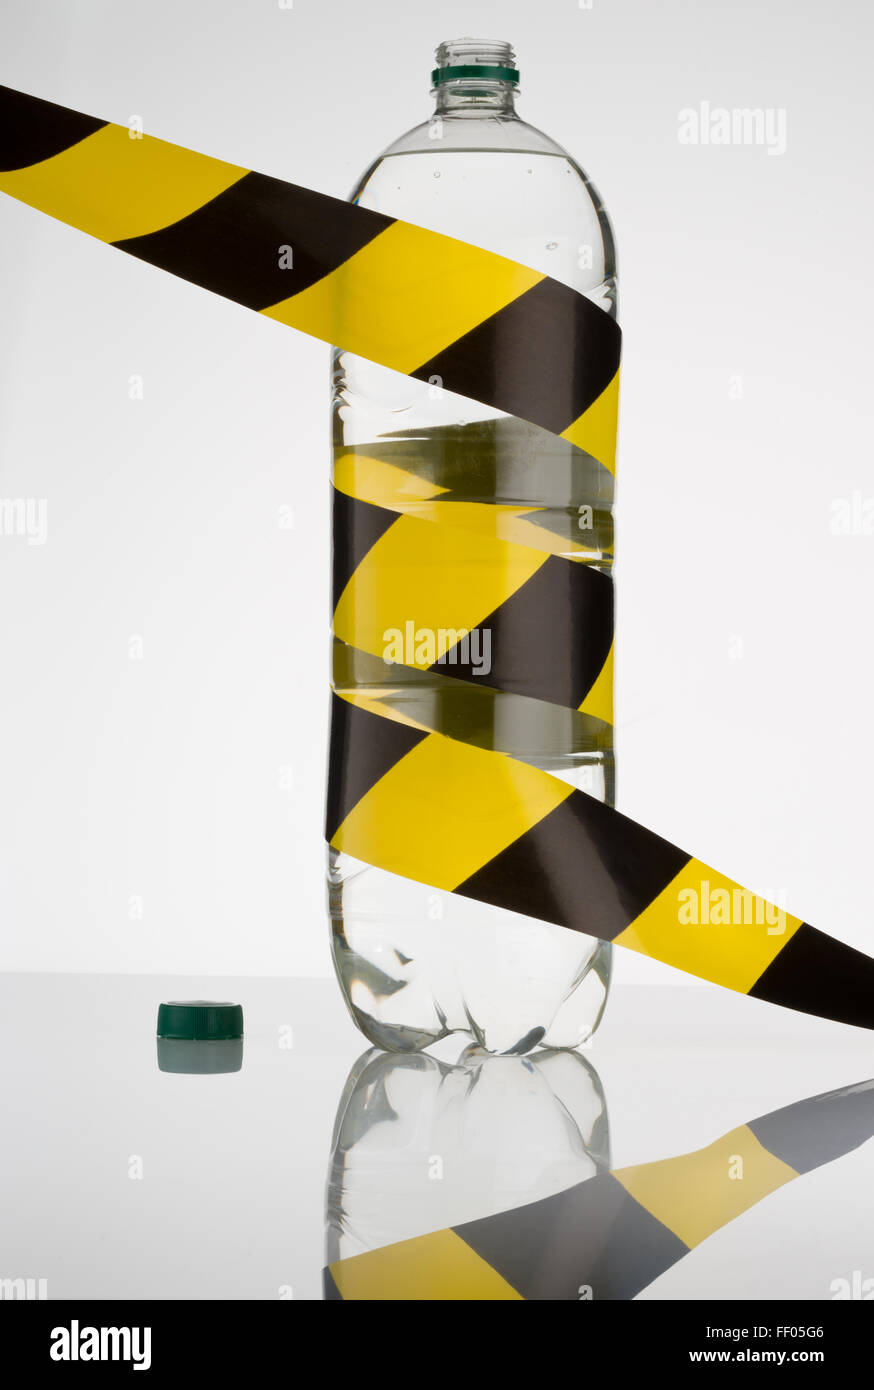 Wasserflasche mit gelb und schwarz gestreifte Sicherheitsband. Sicherheit darstellt für den Menschen durch gutes Wasser Sicherheit. Stockfoto